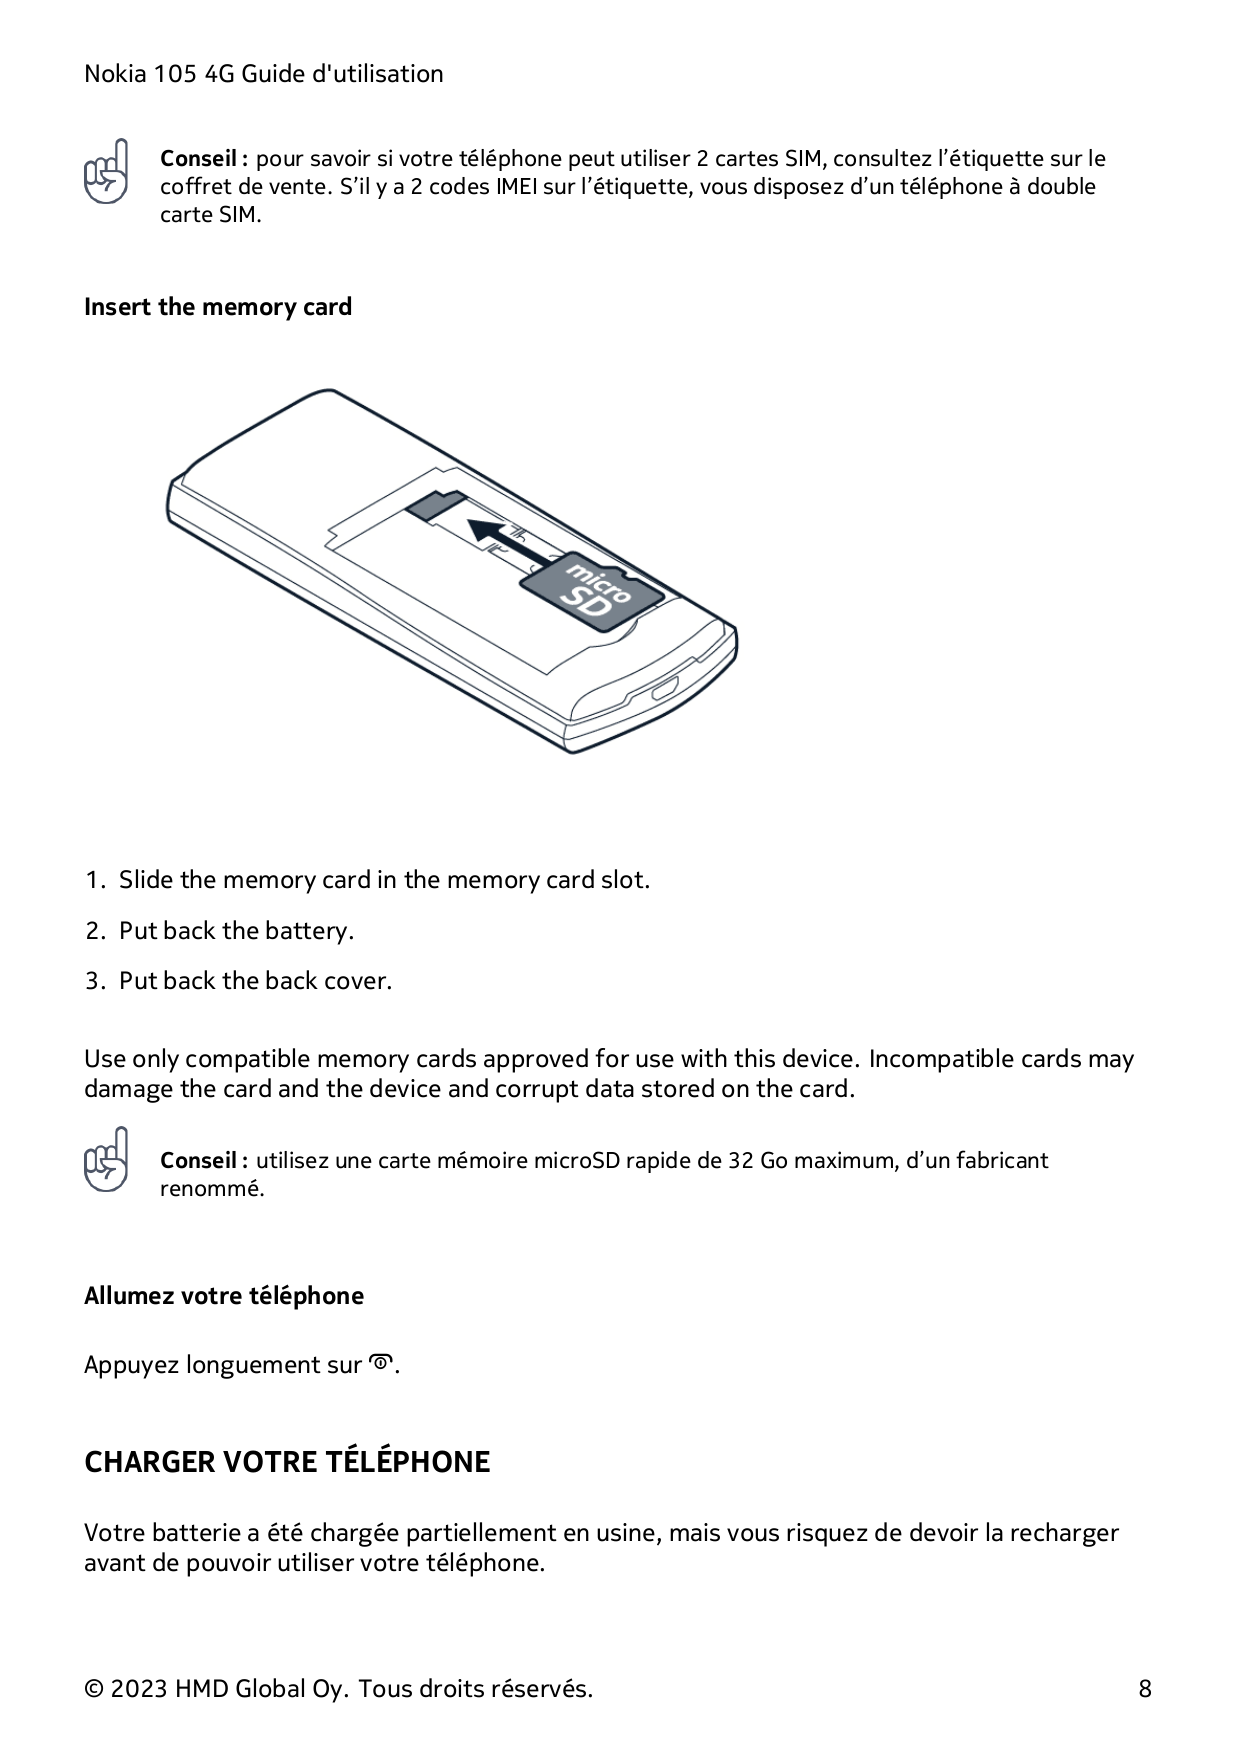 Nokia 105 4G Guide d'utilisationConseil : pour savoir si votre téléphone peut utiliser 2 cartes SIM, consultez l’étiquette sur l